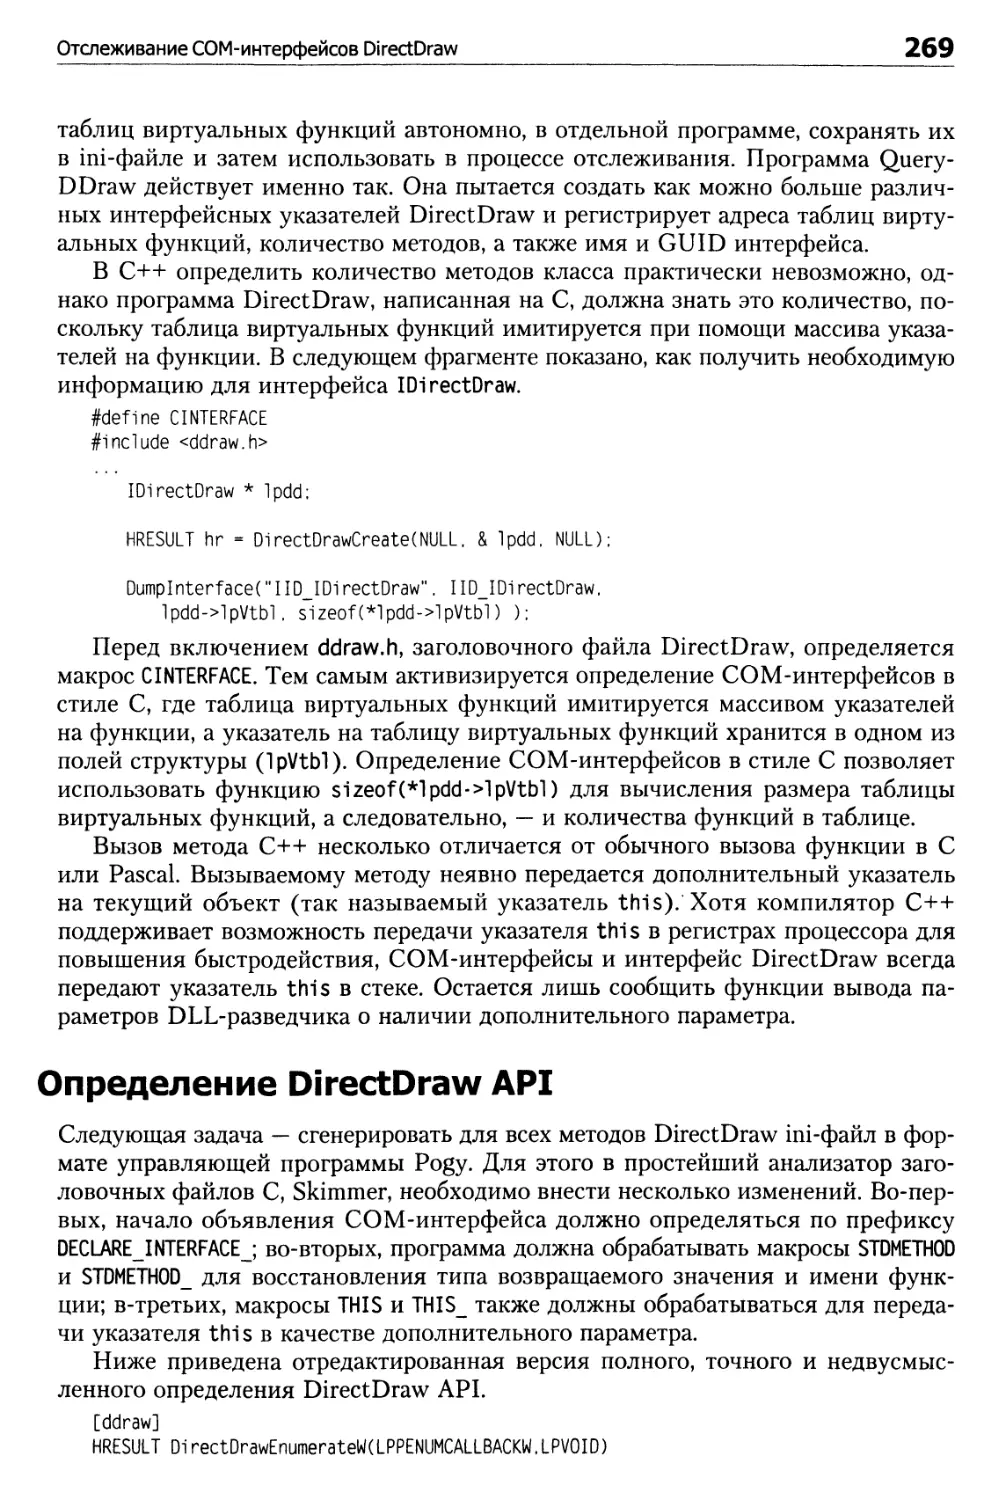 Определение DirectDraw API